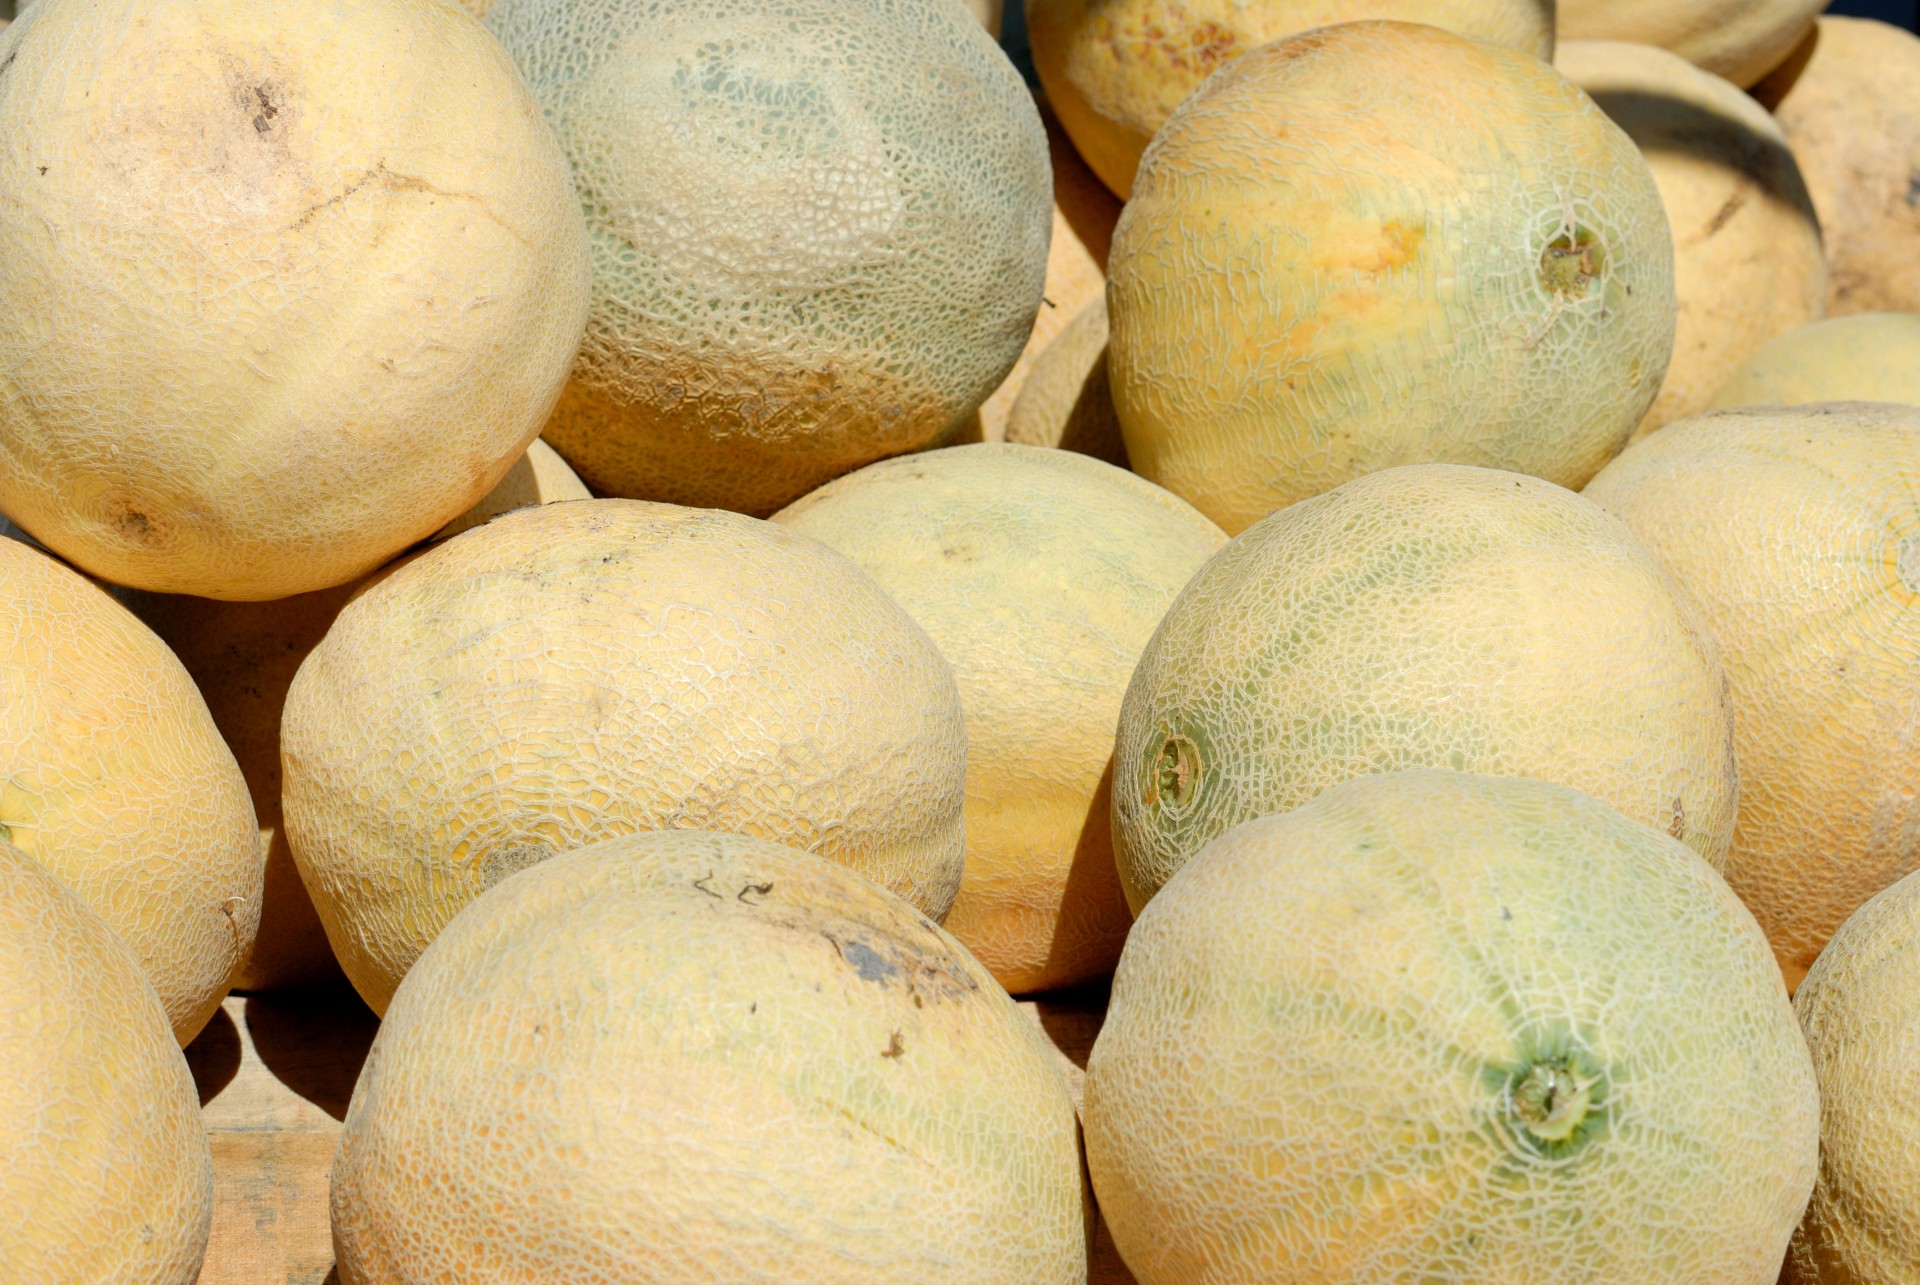 Cantaloupes at market place background